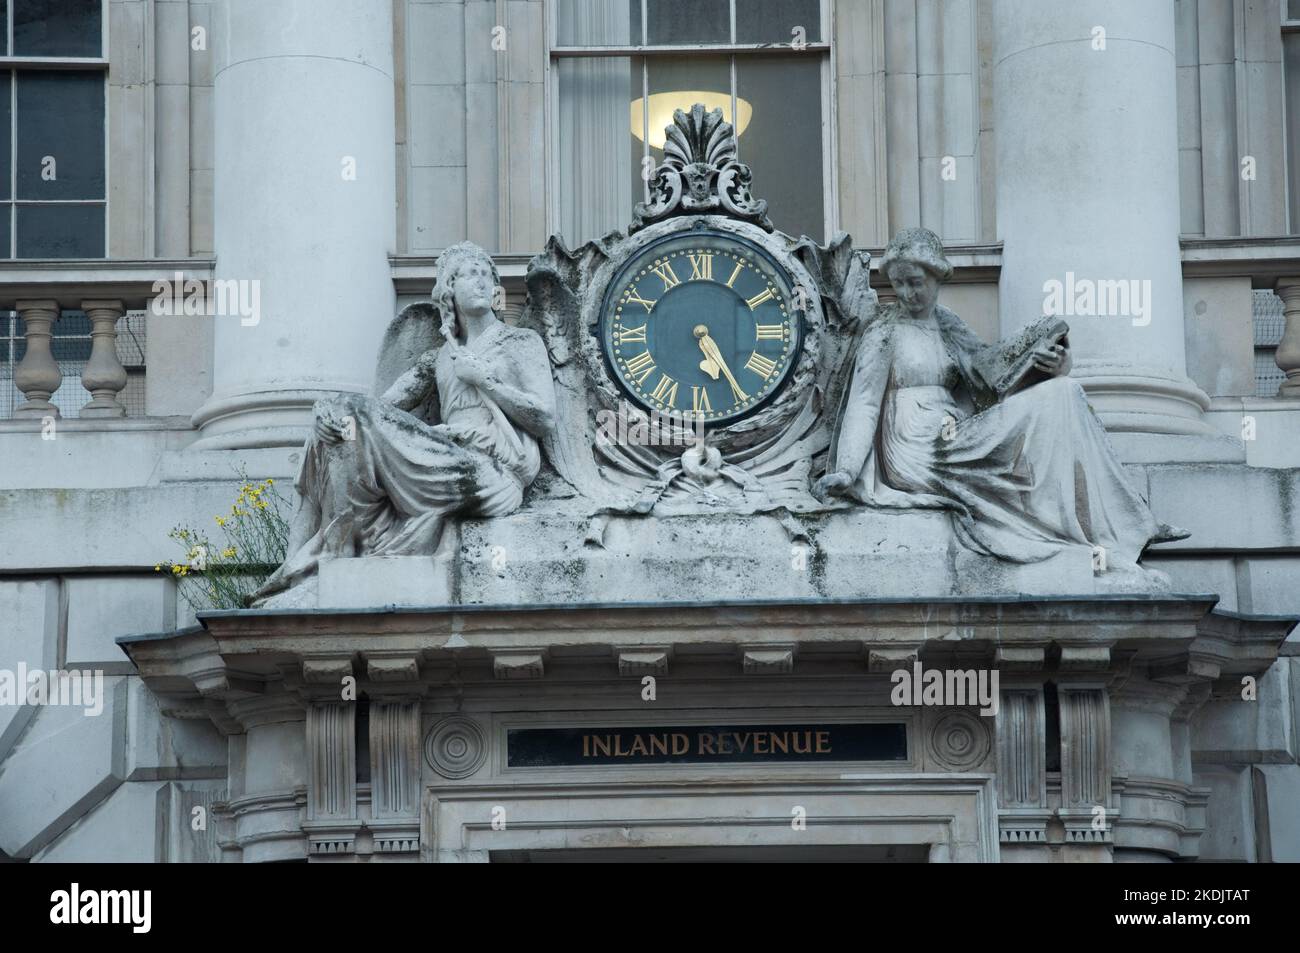 Somerset House, Londra, era dove tutti i record di nascite, morti e matrimoni venivano conservati prima dell'era digitale. Edificio ornato con orologio. Foto Stock